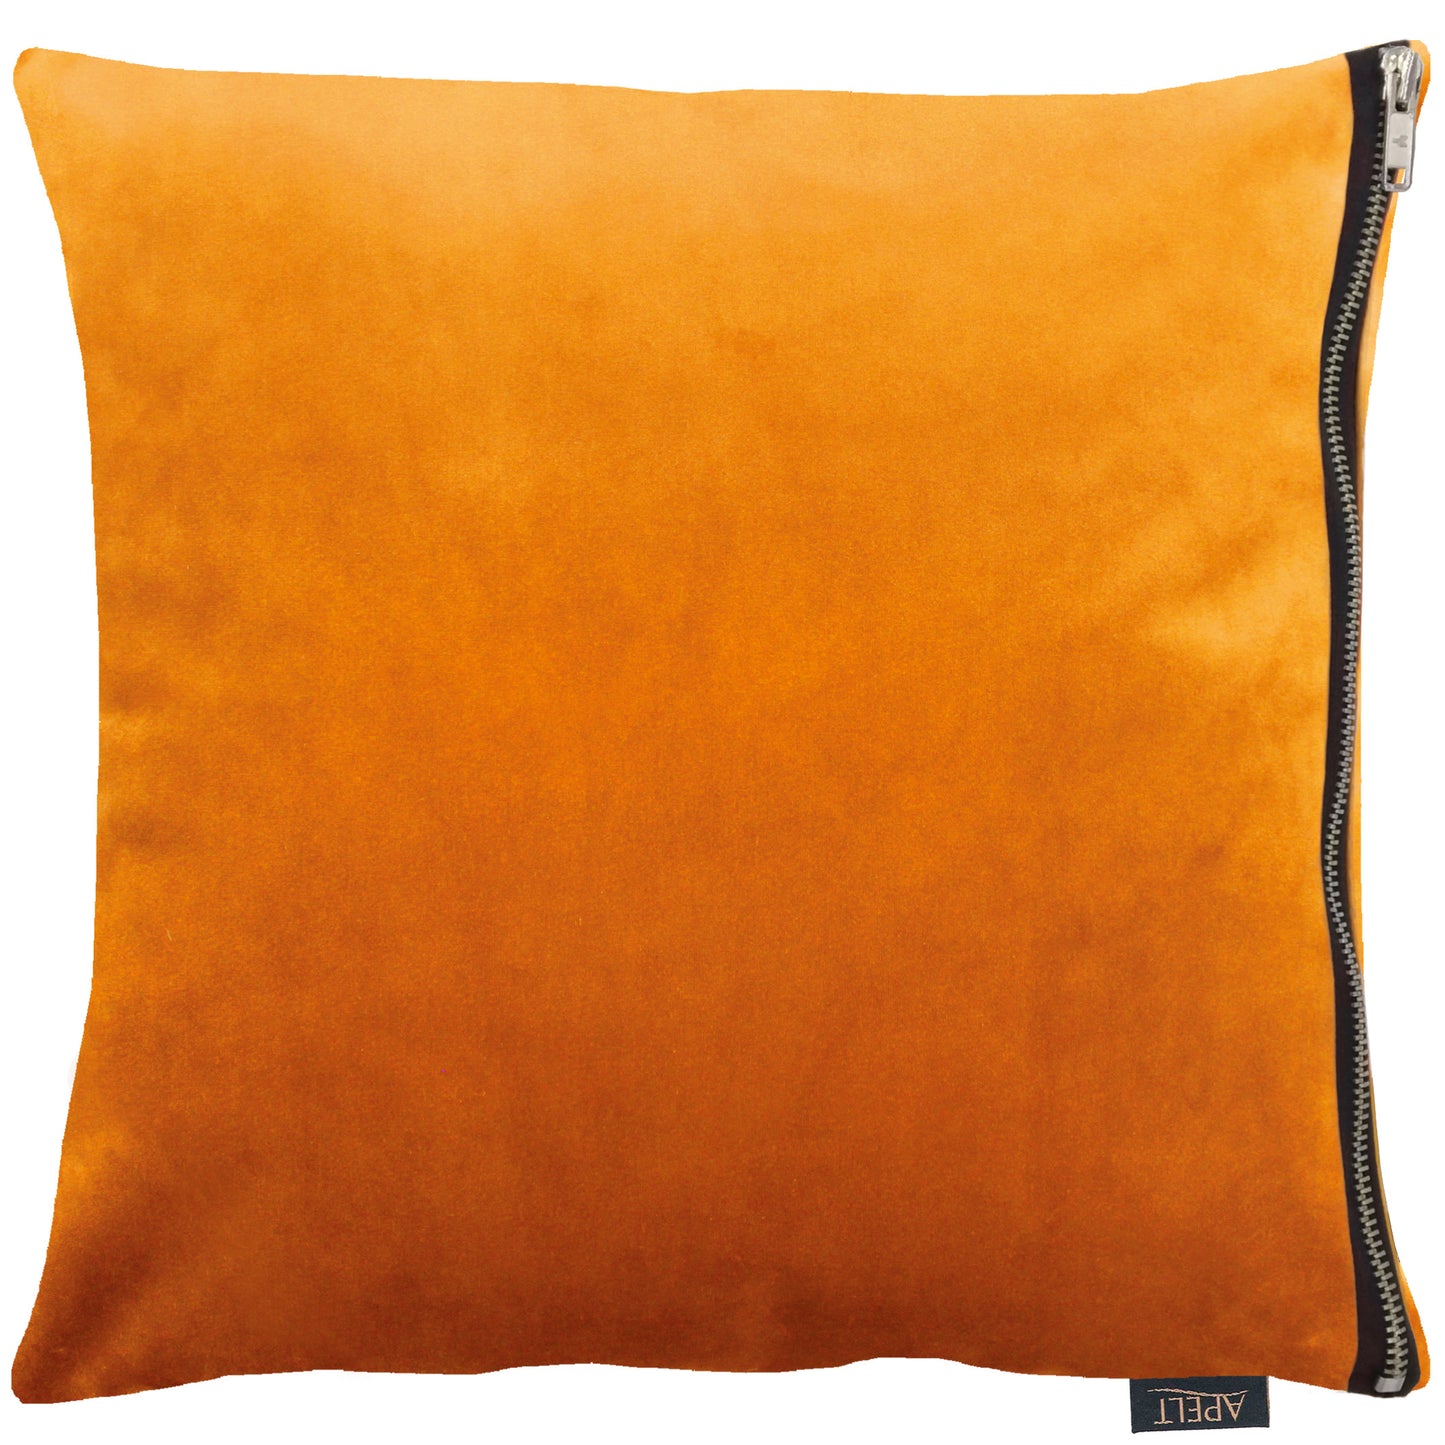 Apelt Tassilo velvet cushion in Orange with statement zip